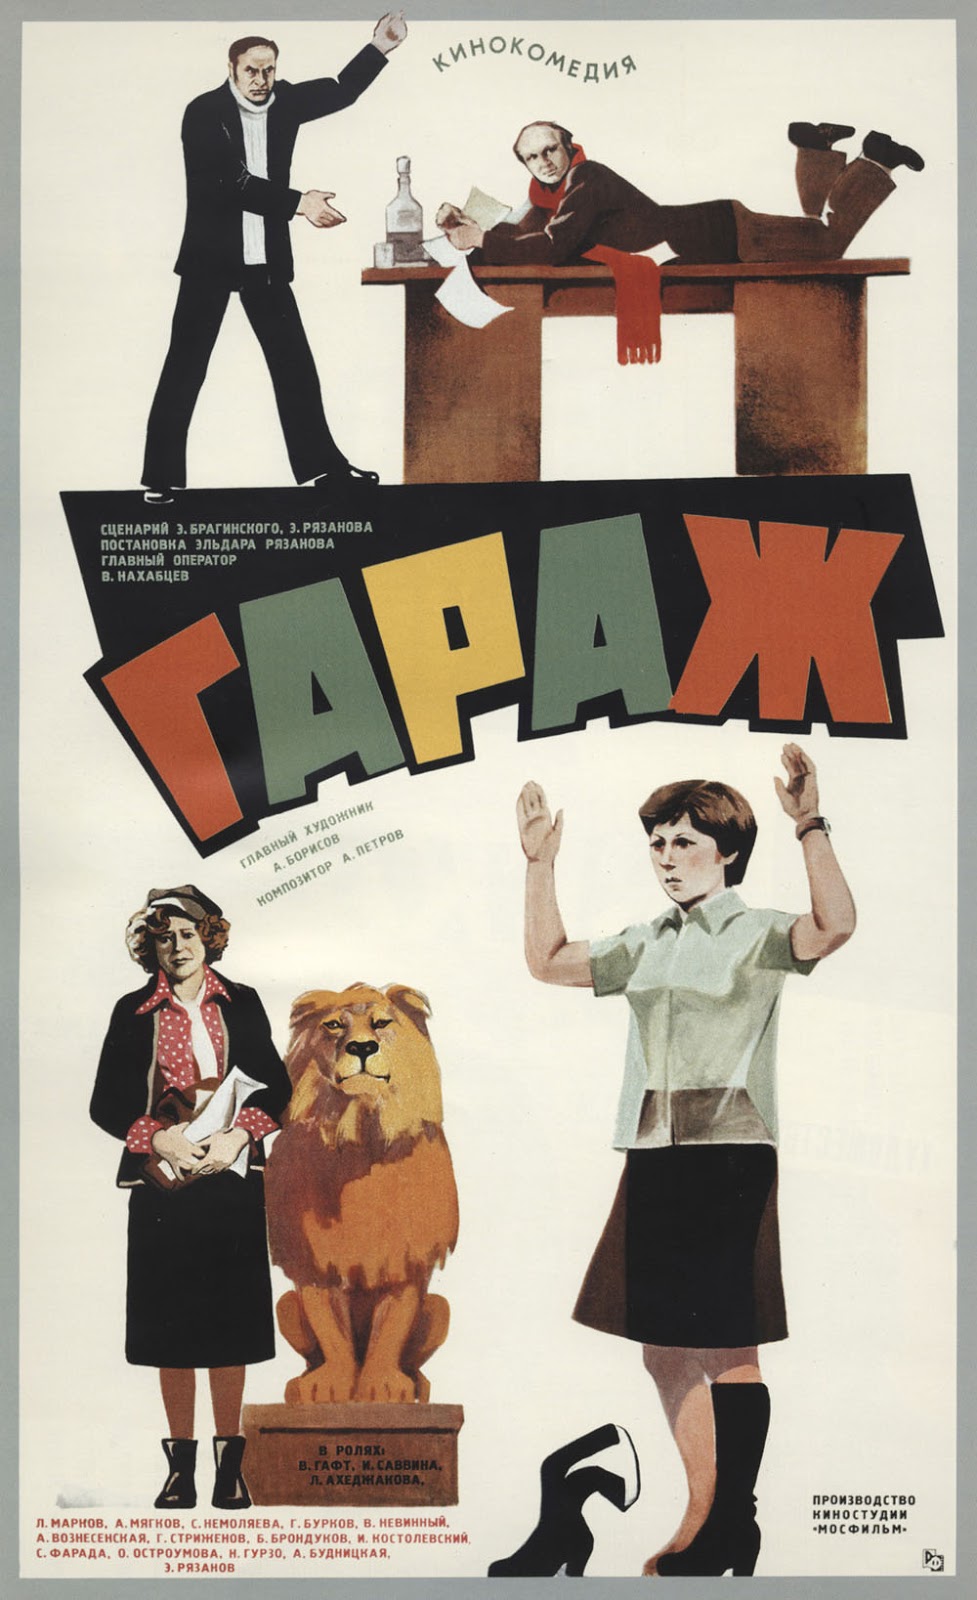 Постер фильма "Гараж", 1979